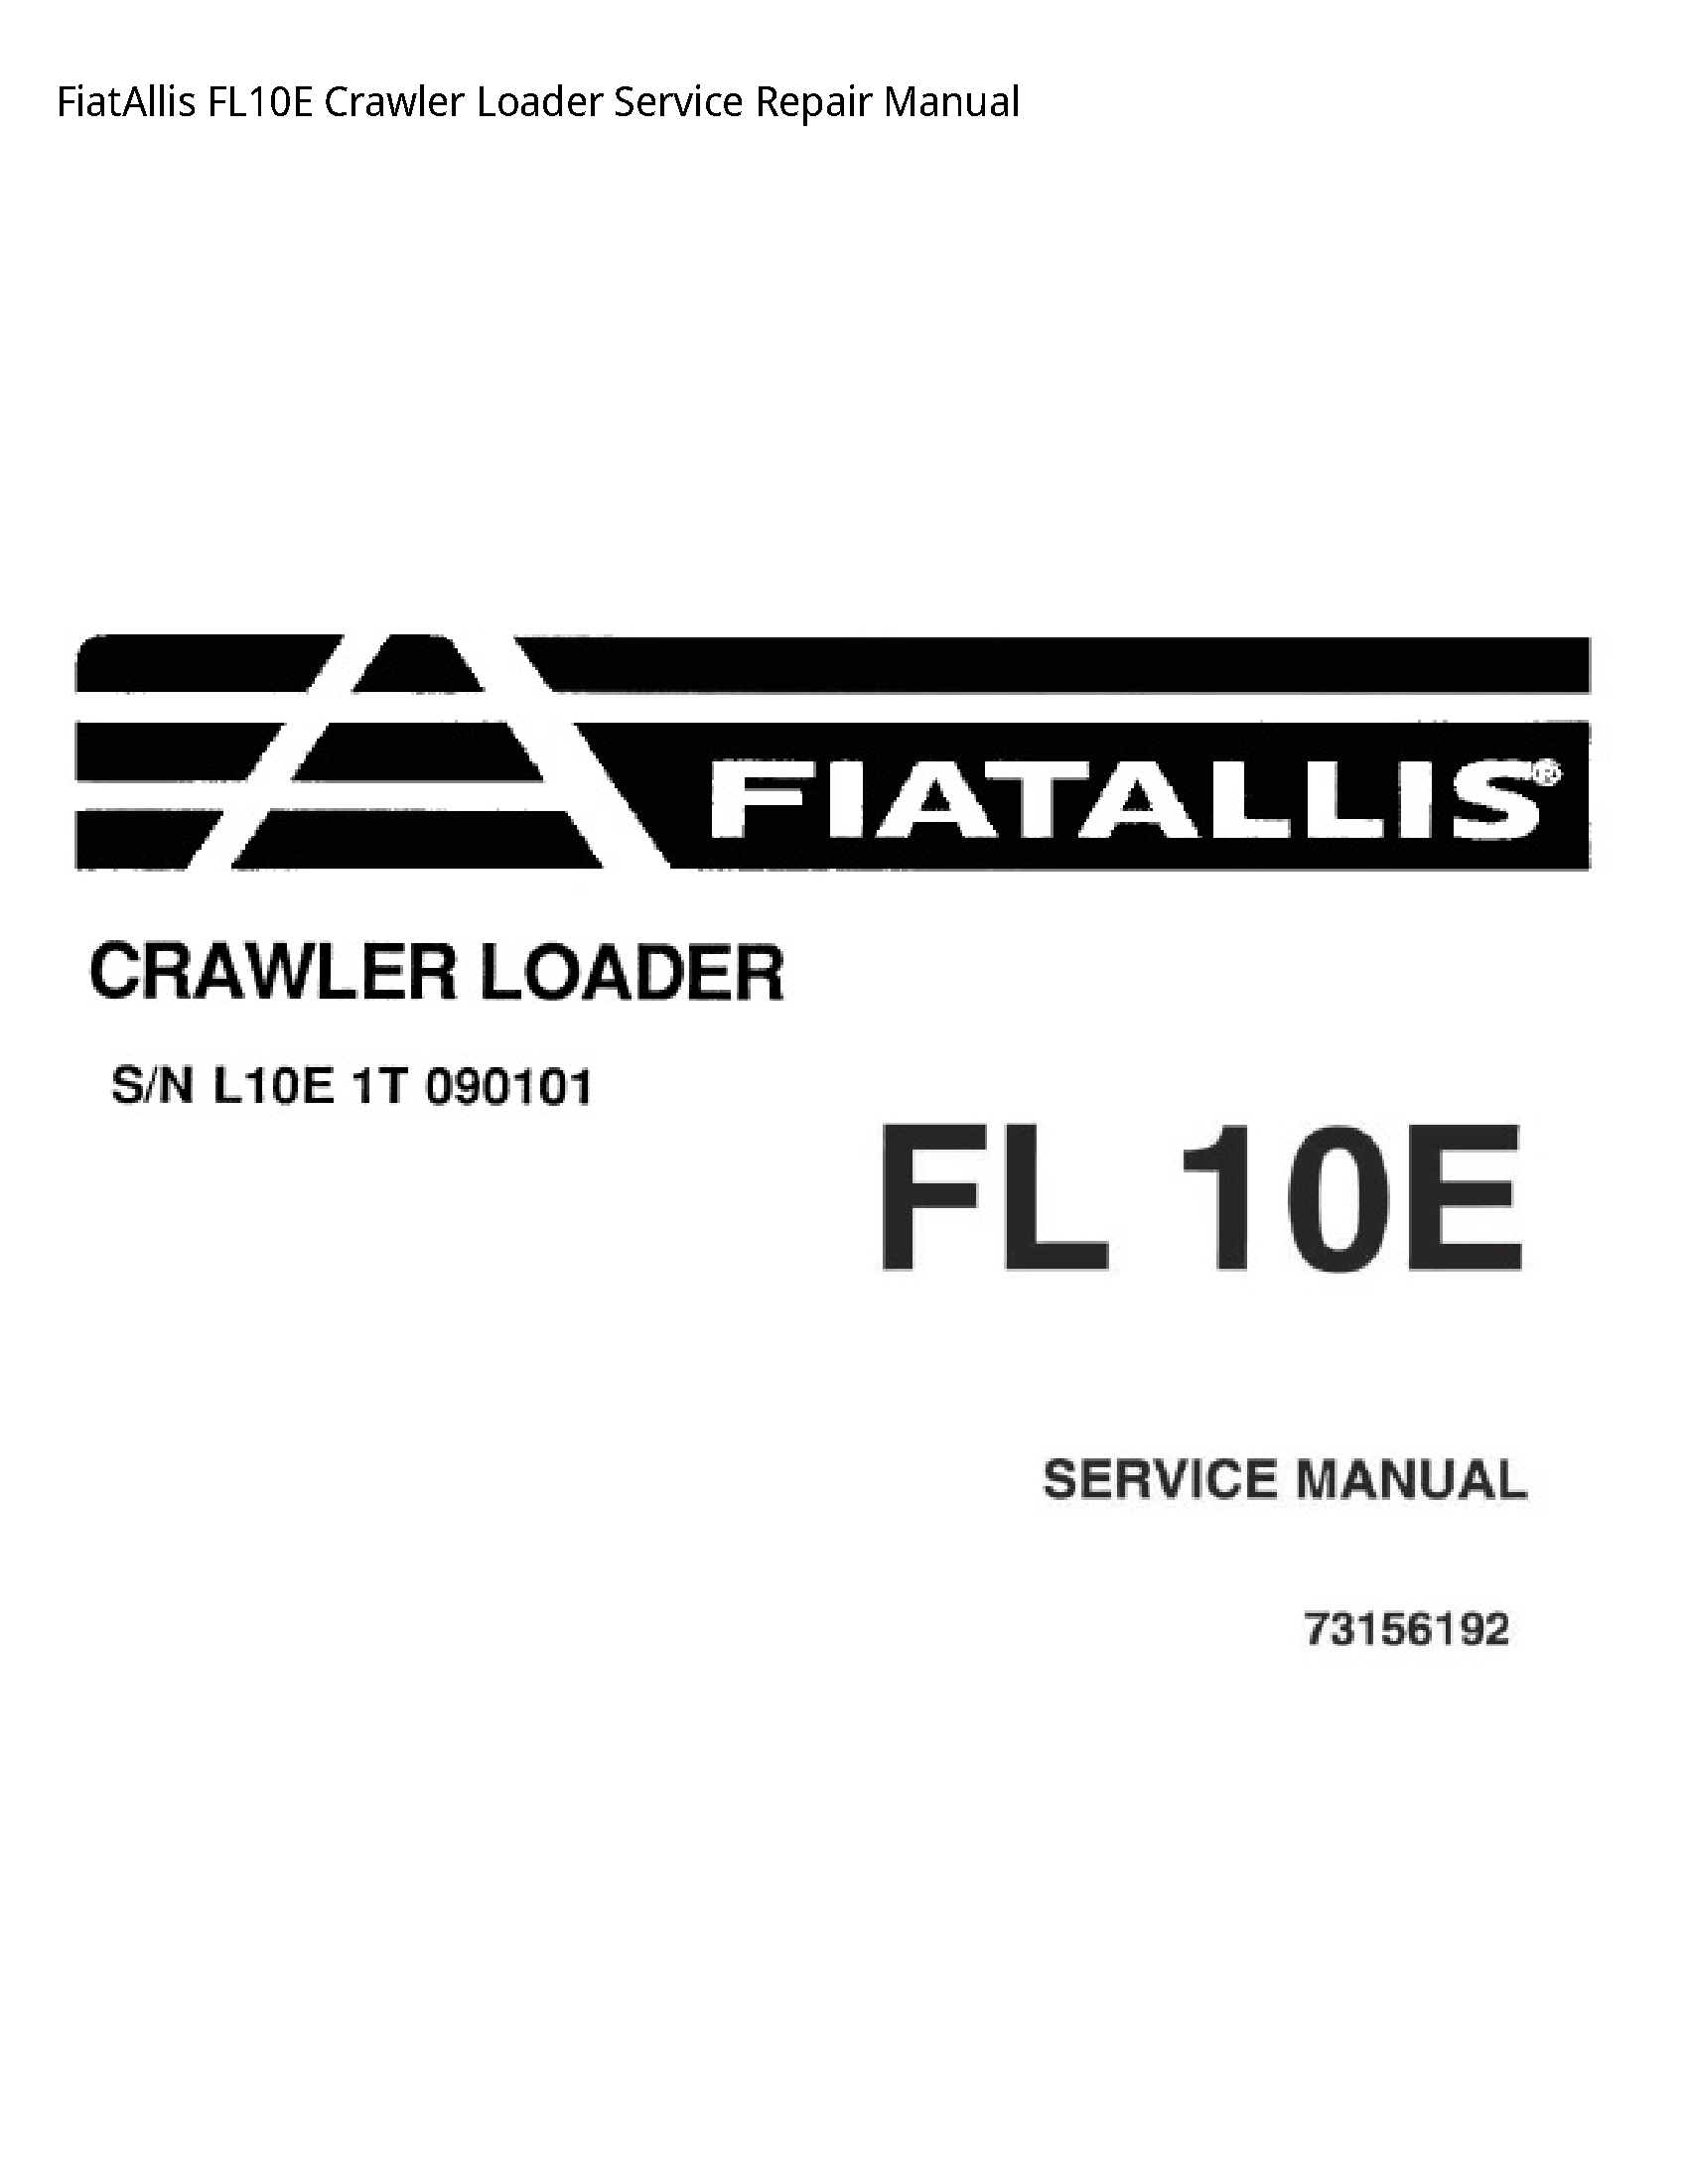 Fiatallis FL10E Crawler Loader manual